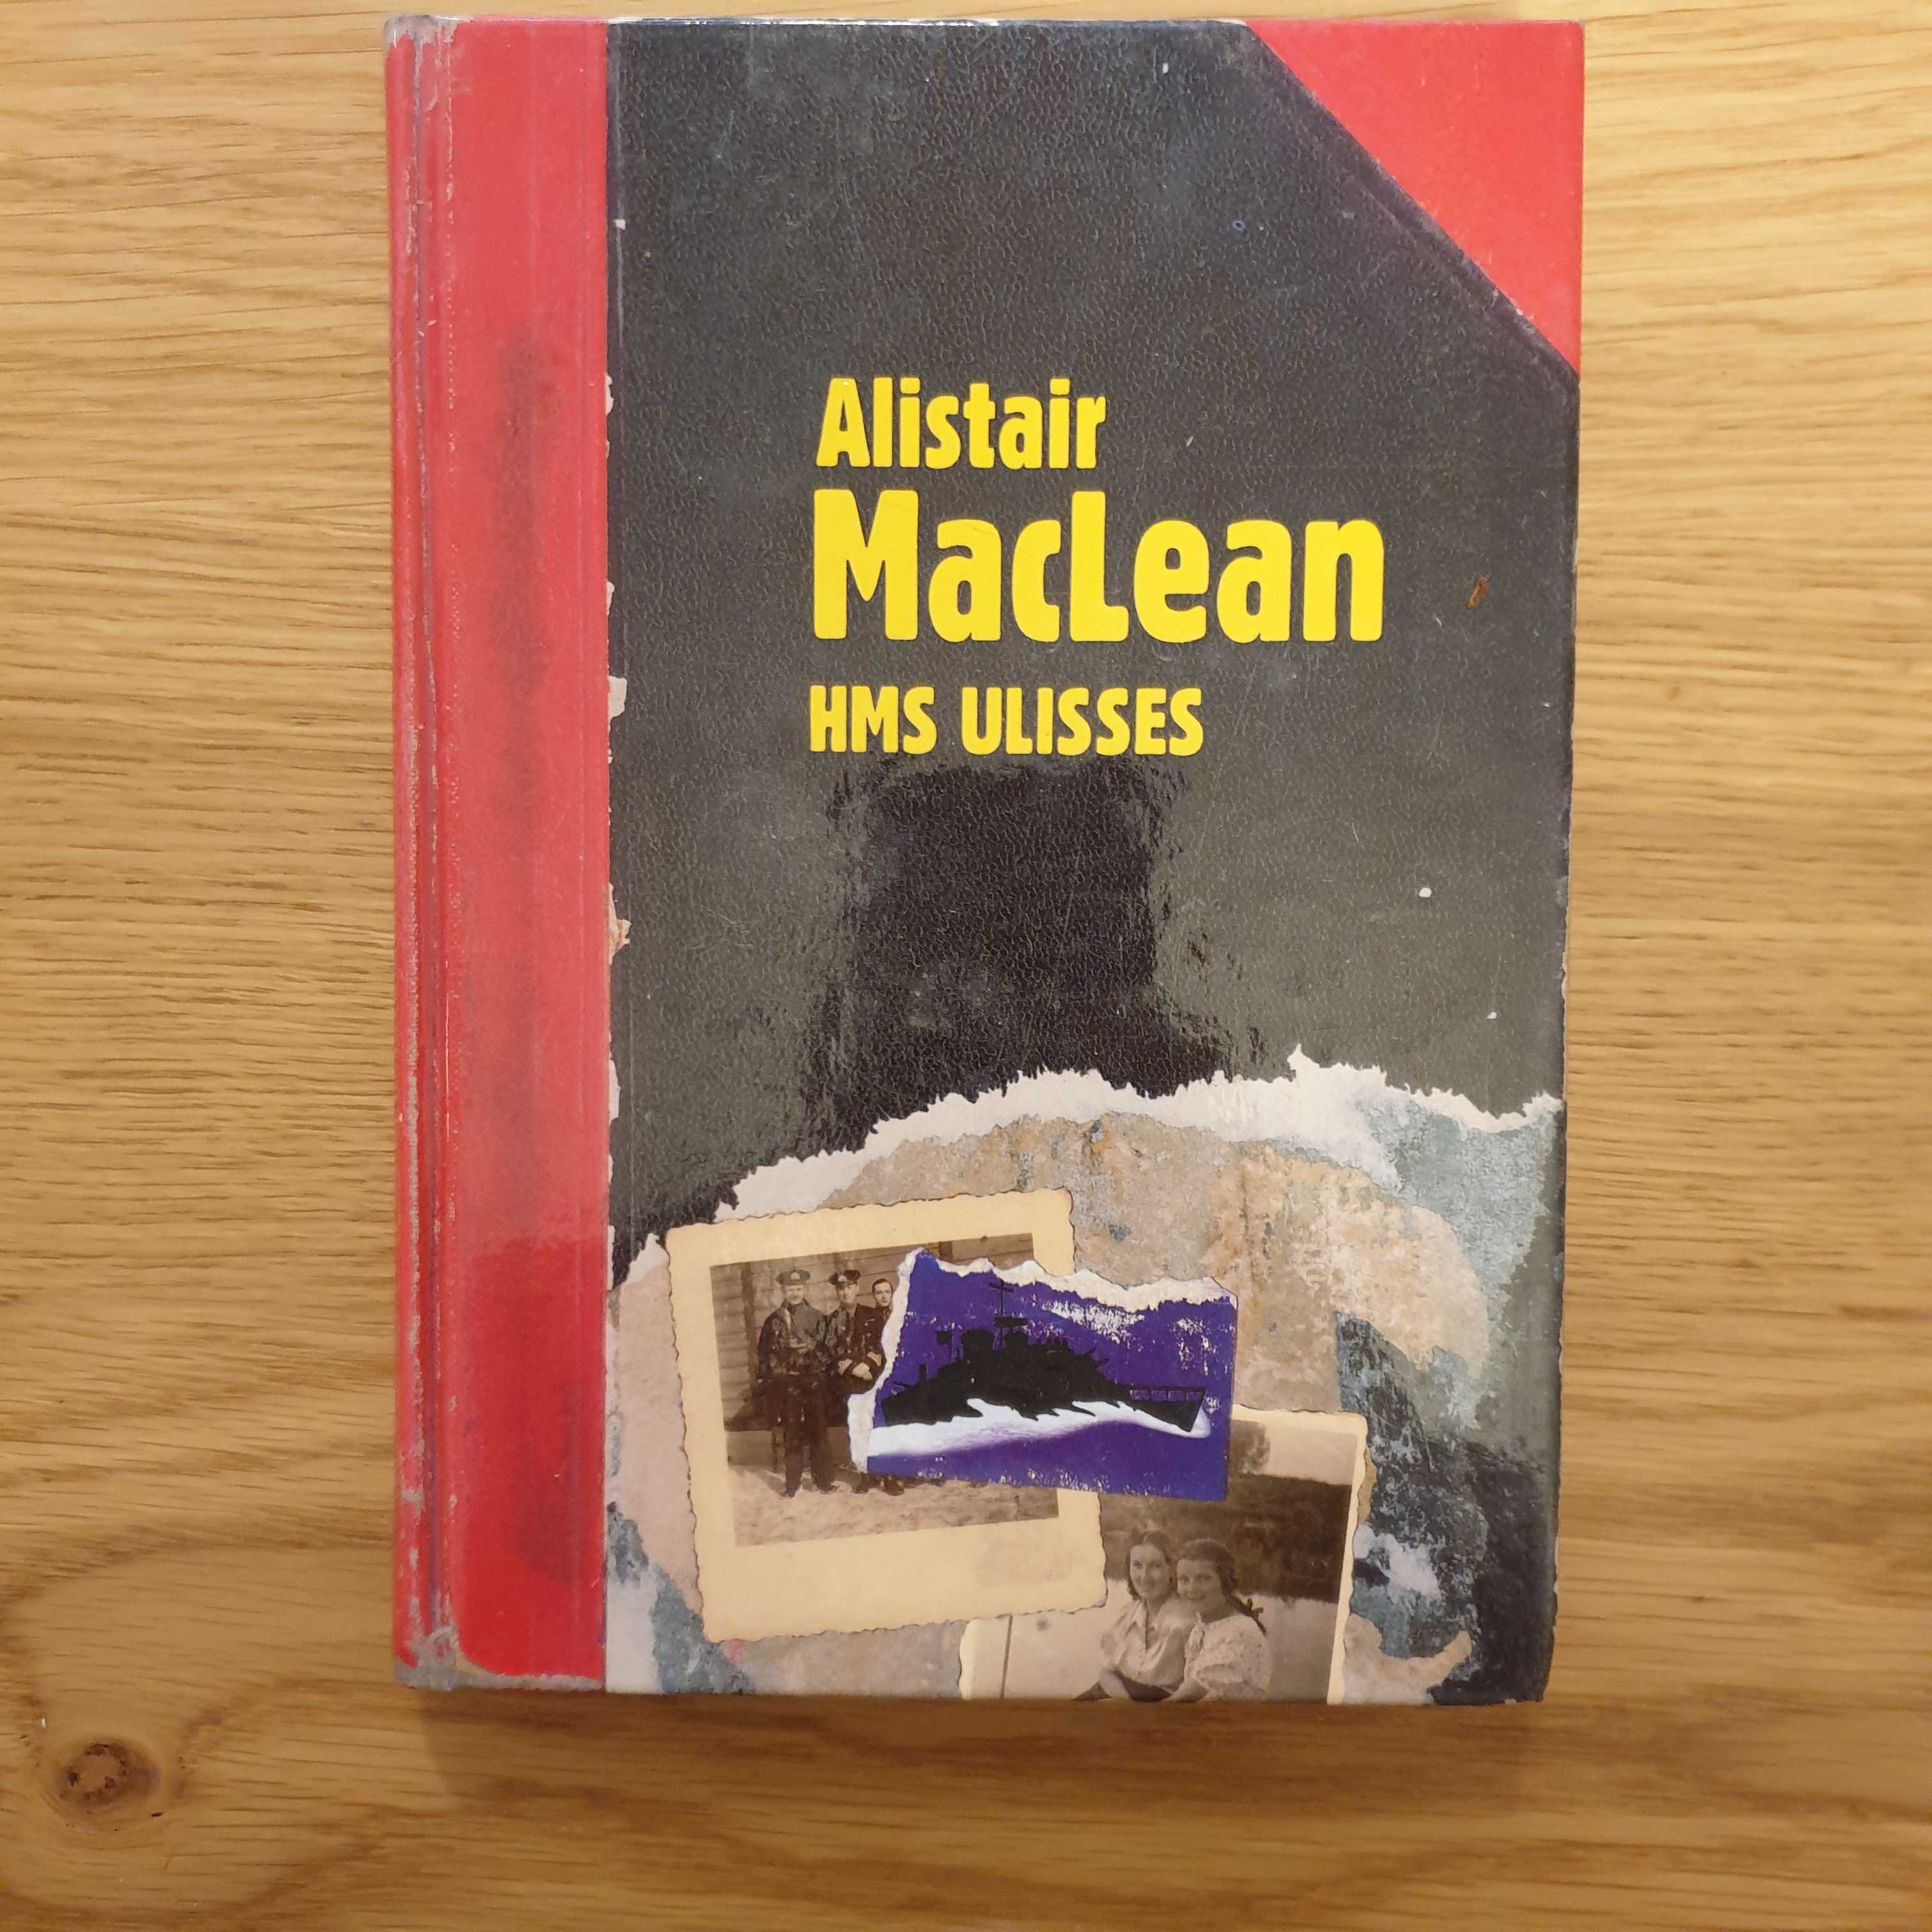 Książka "HMS Ulisses" Alistair MacLean